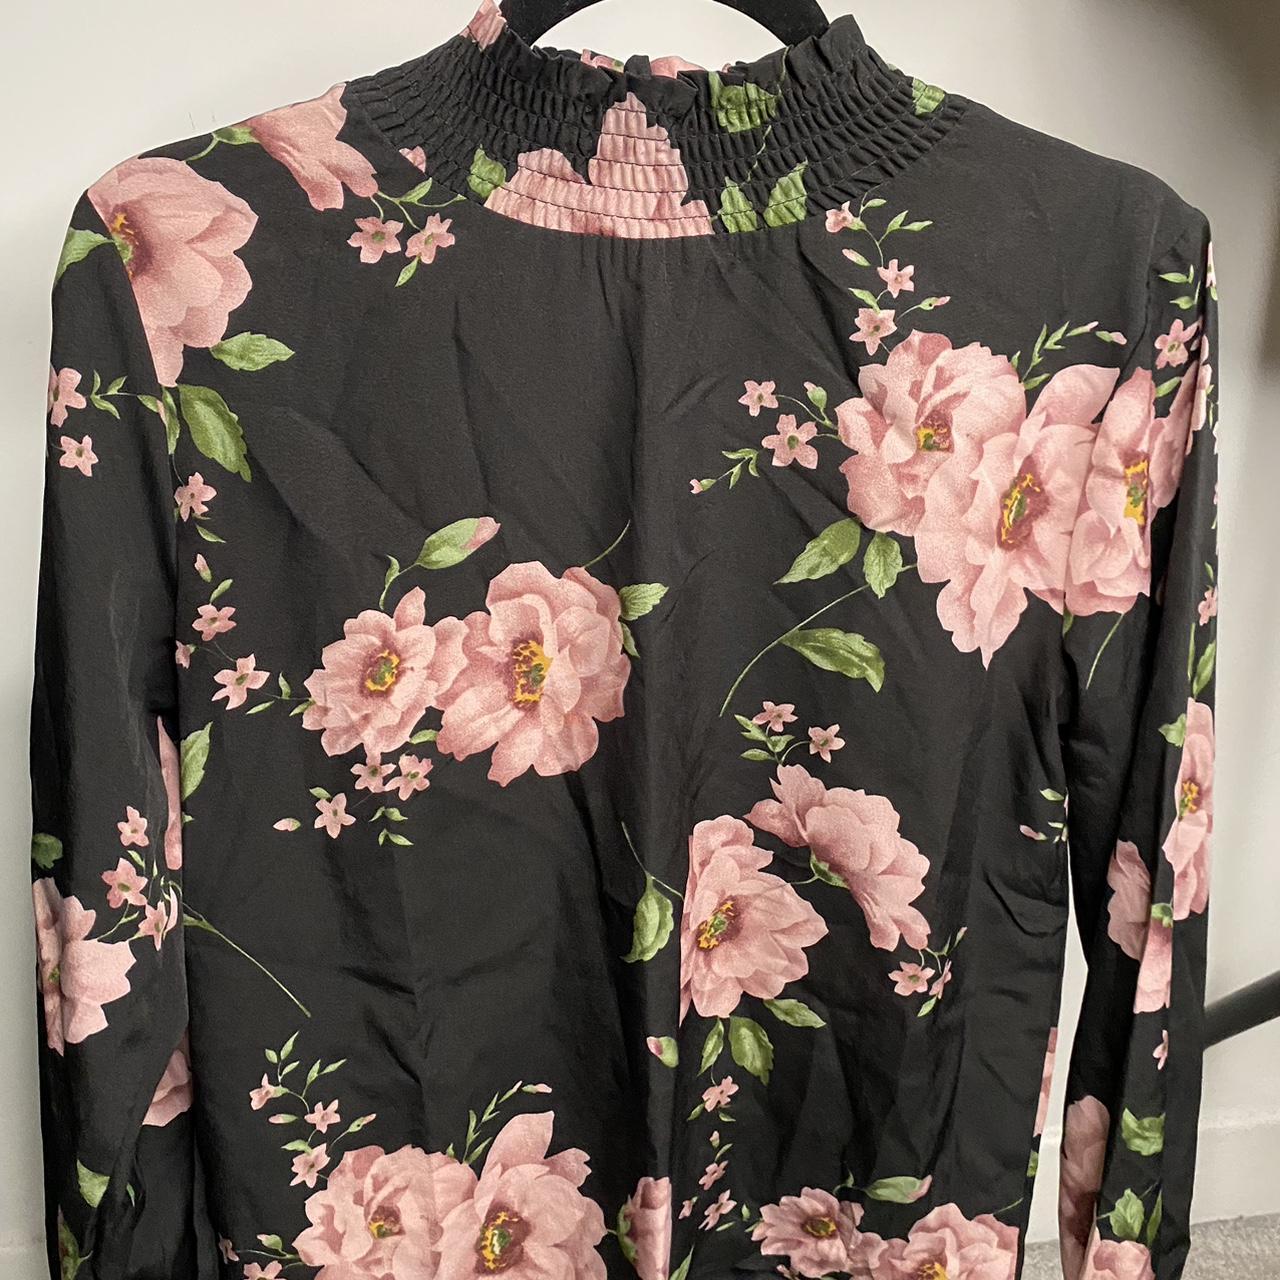 Floral black and pink high neck blouse Originally... - Depop